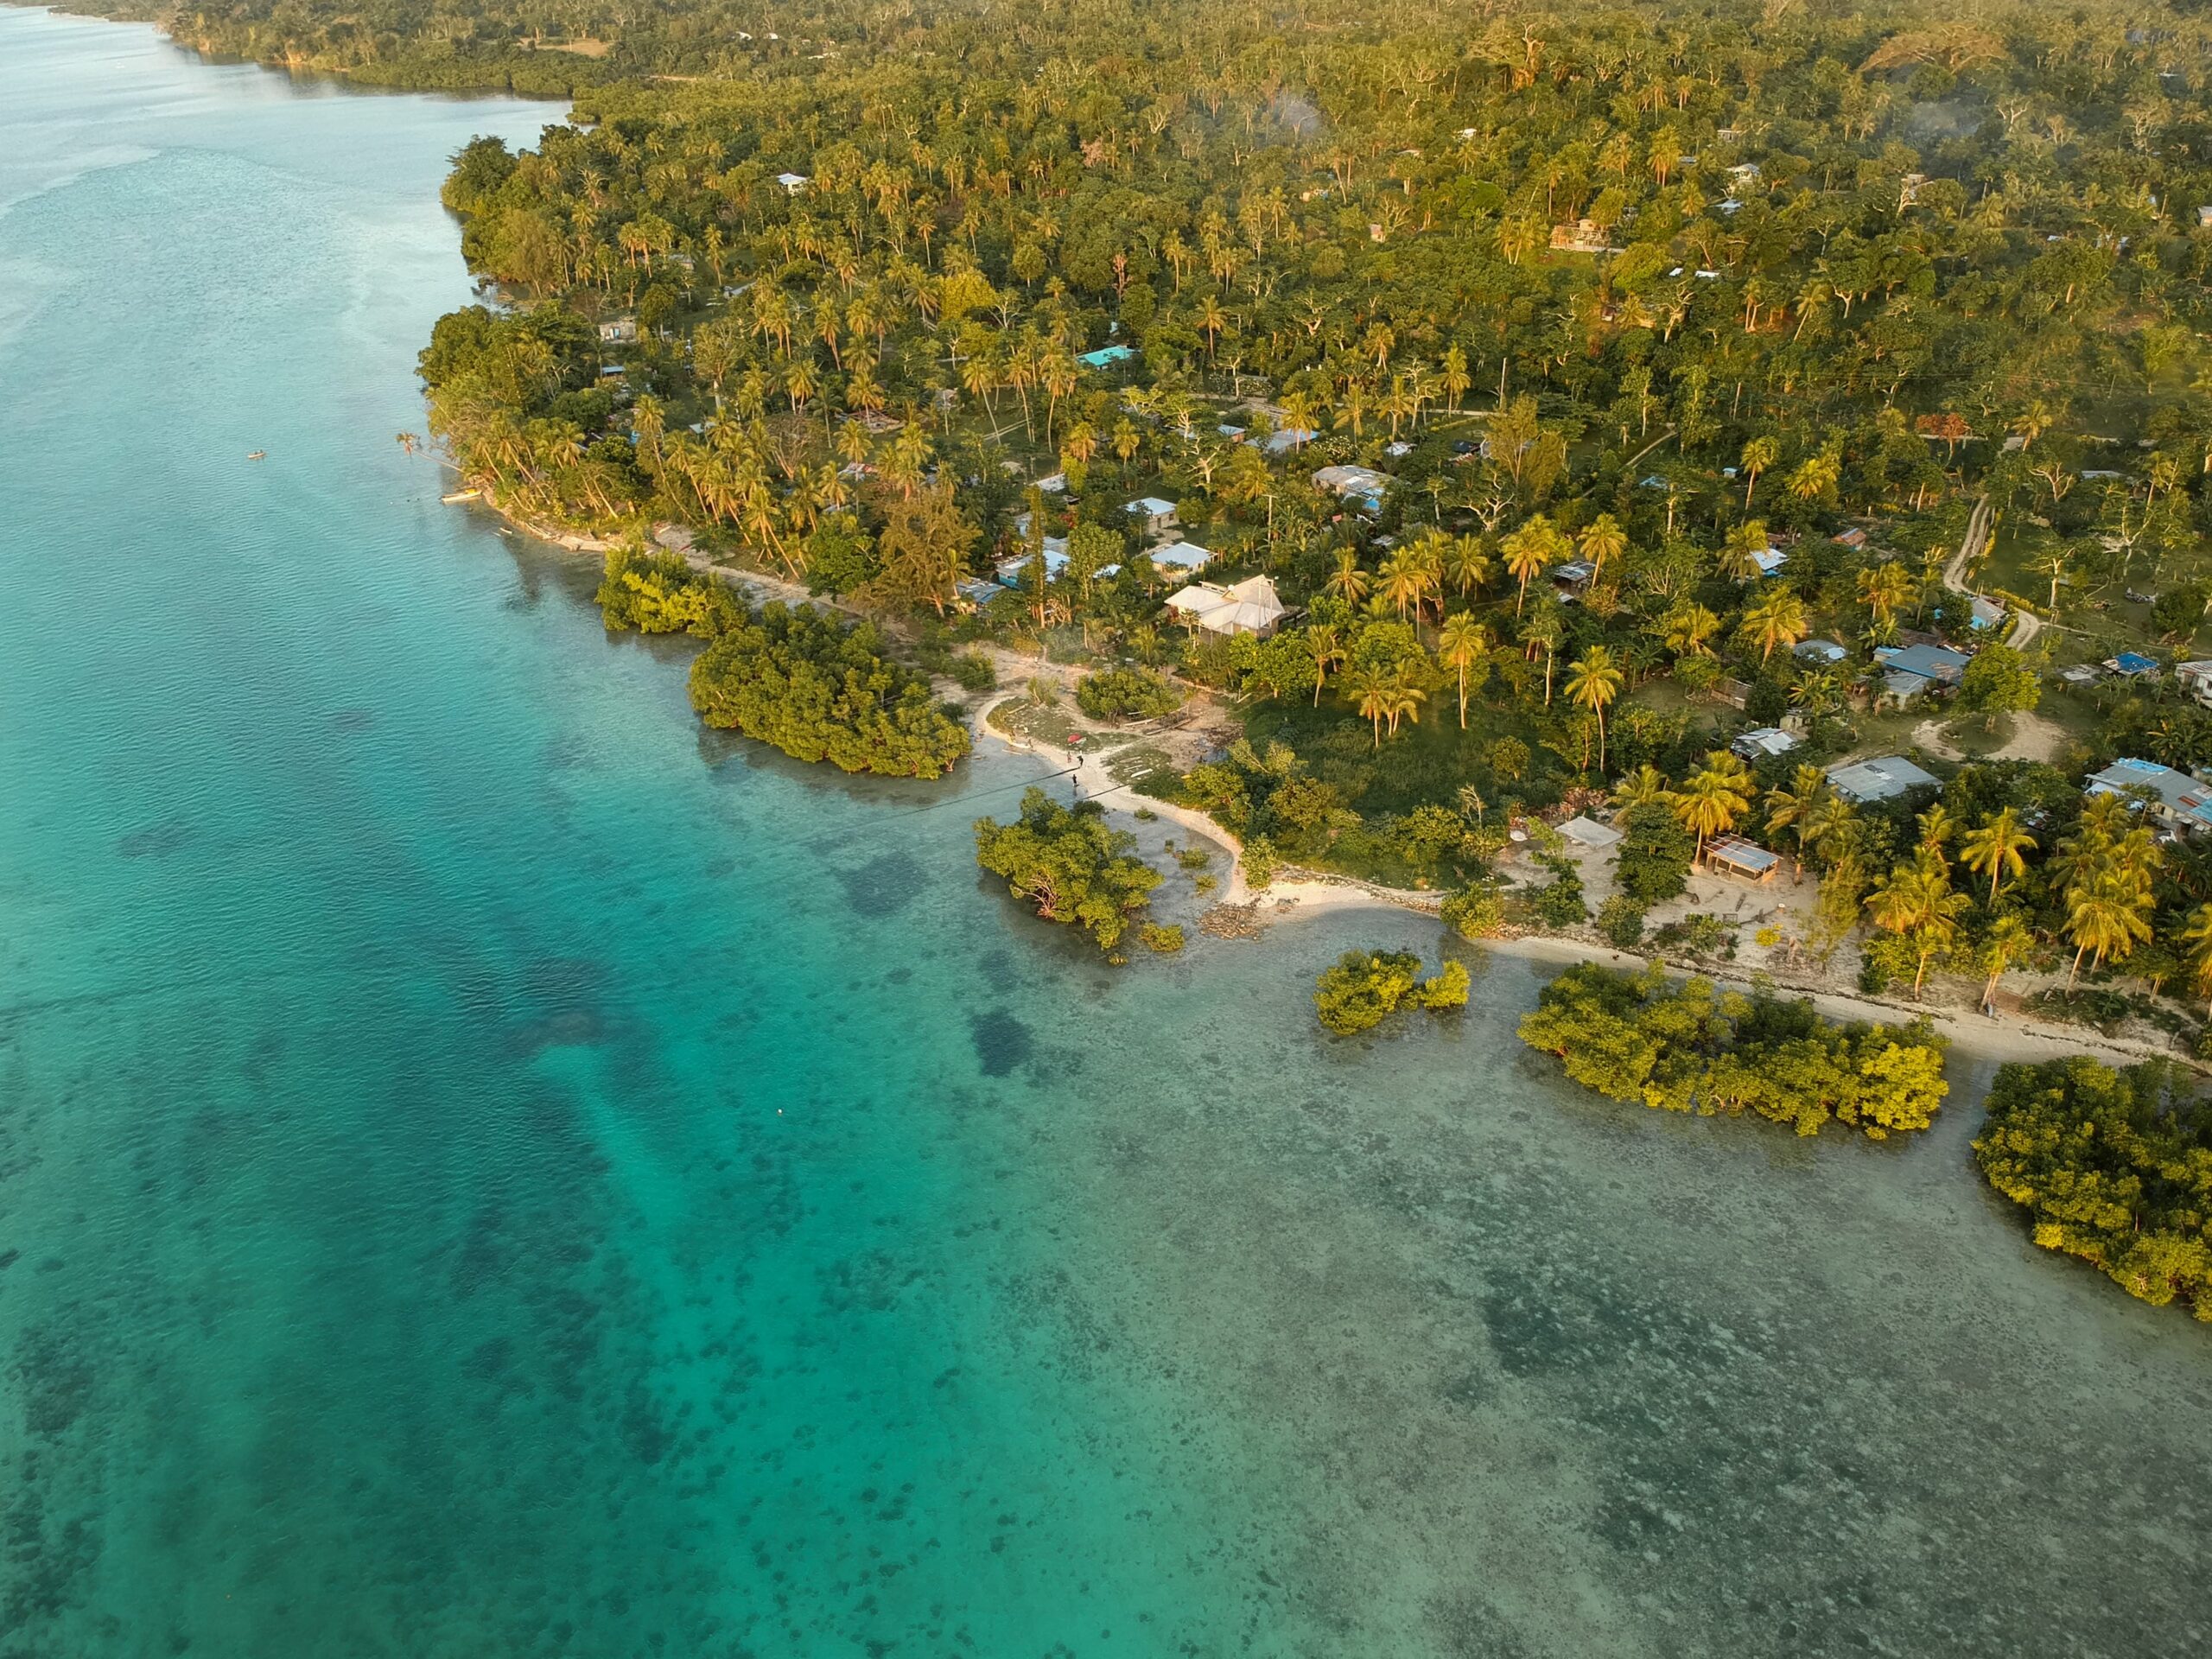 Drone in Vanuatu